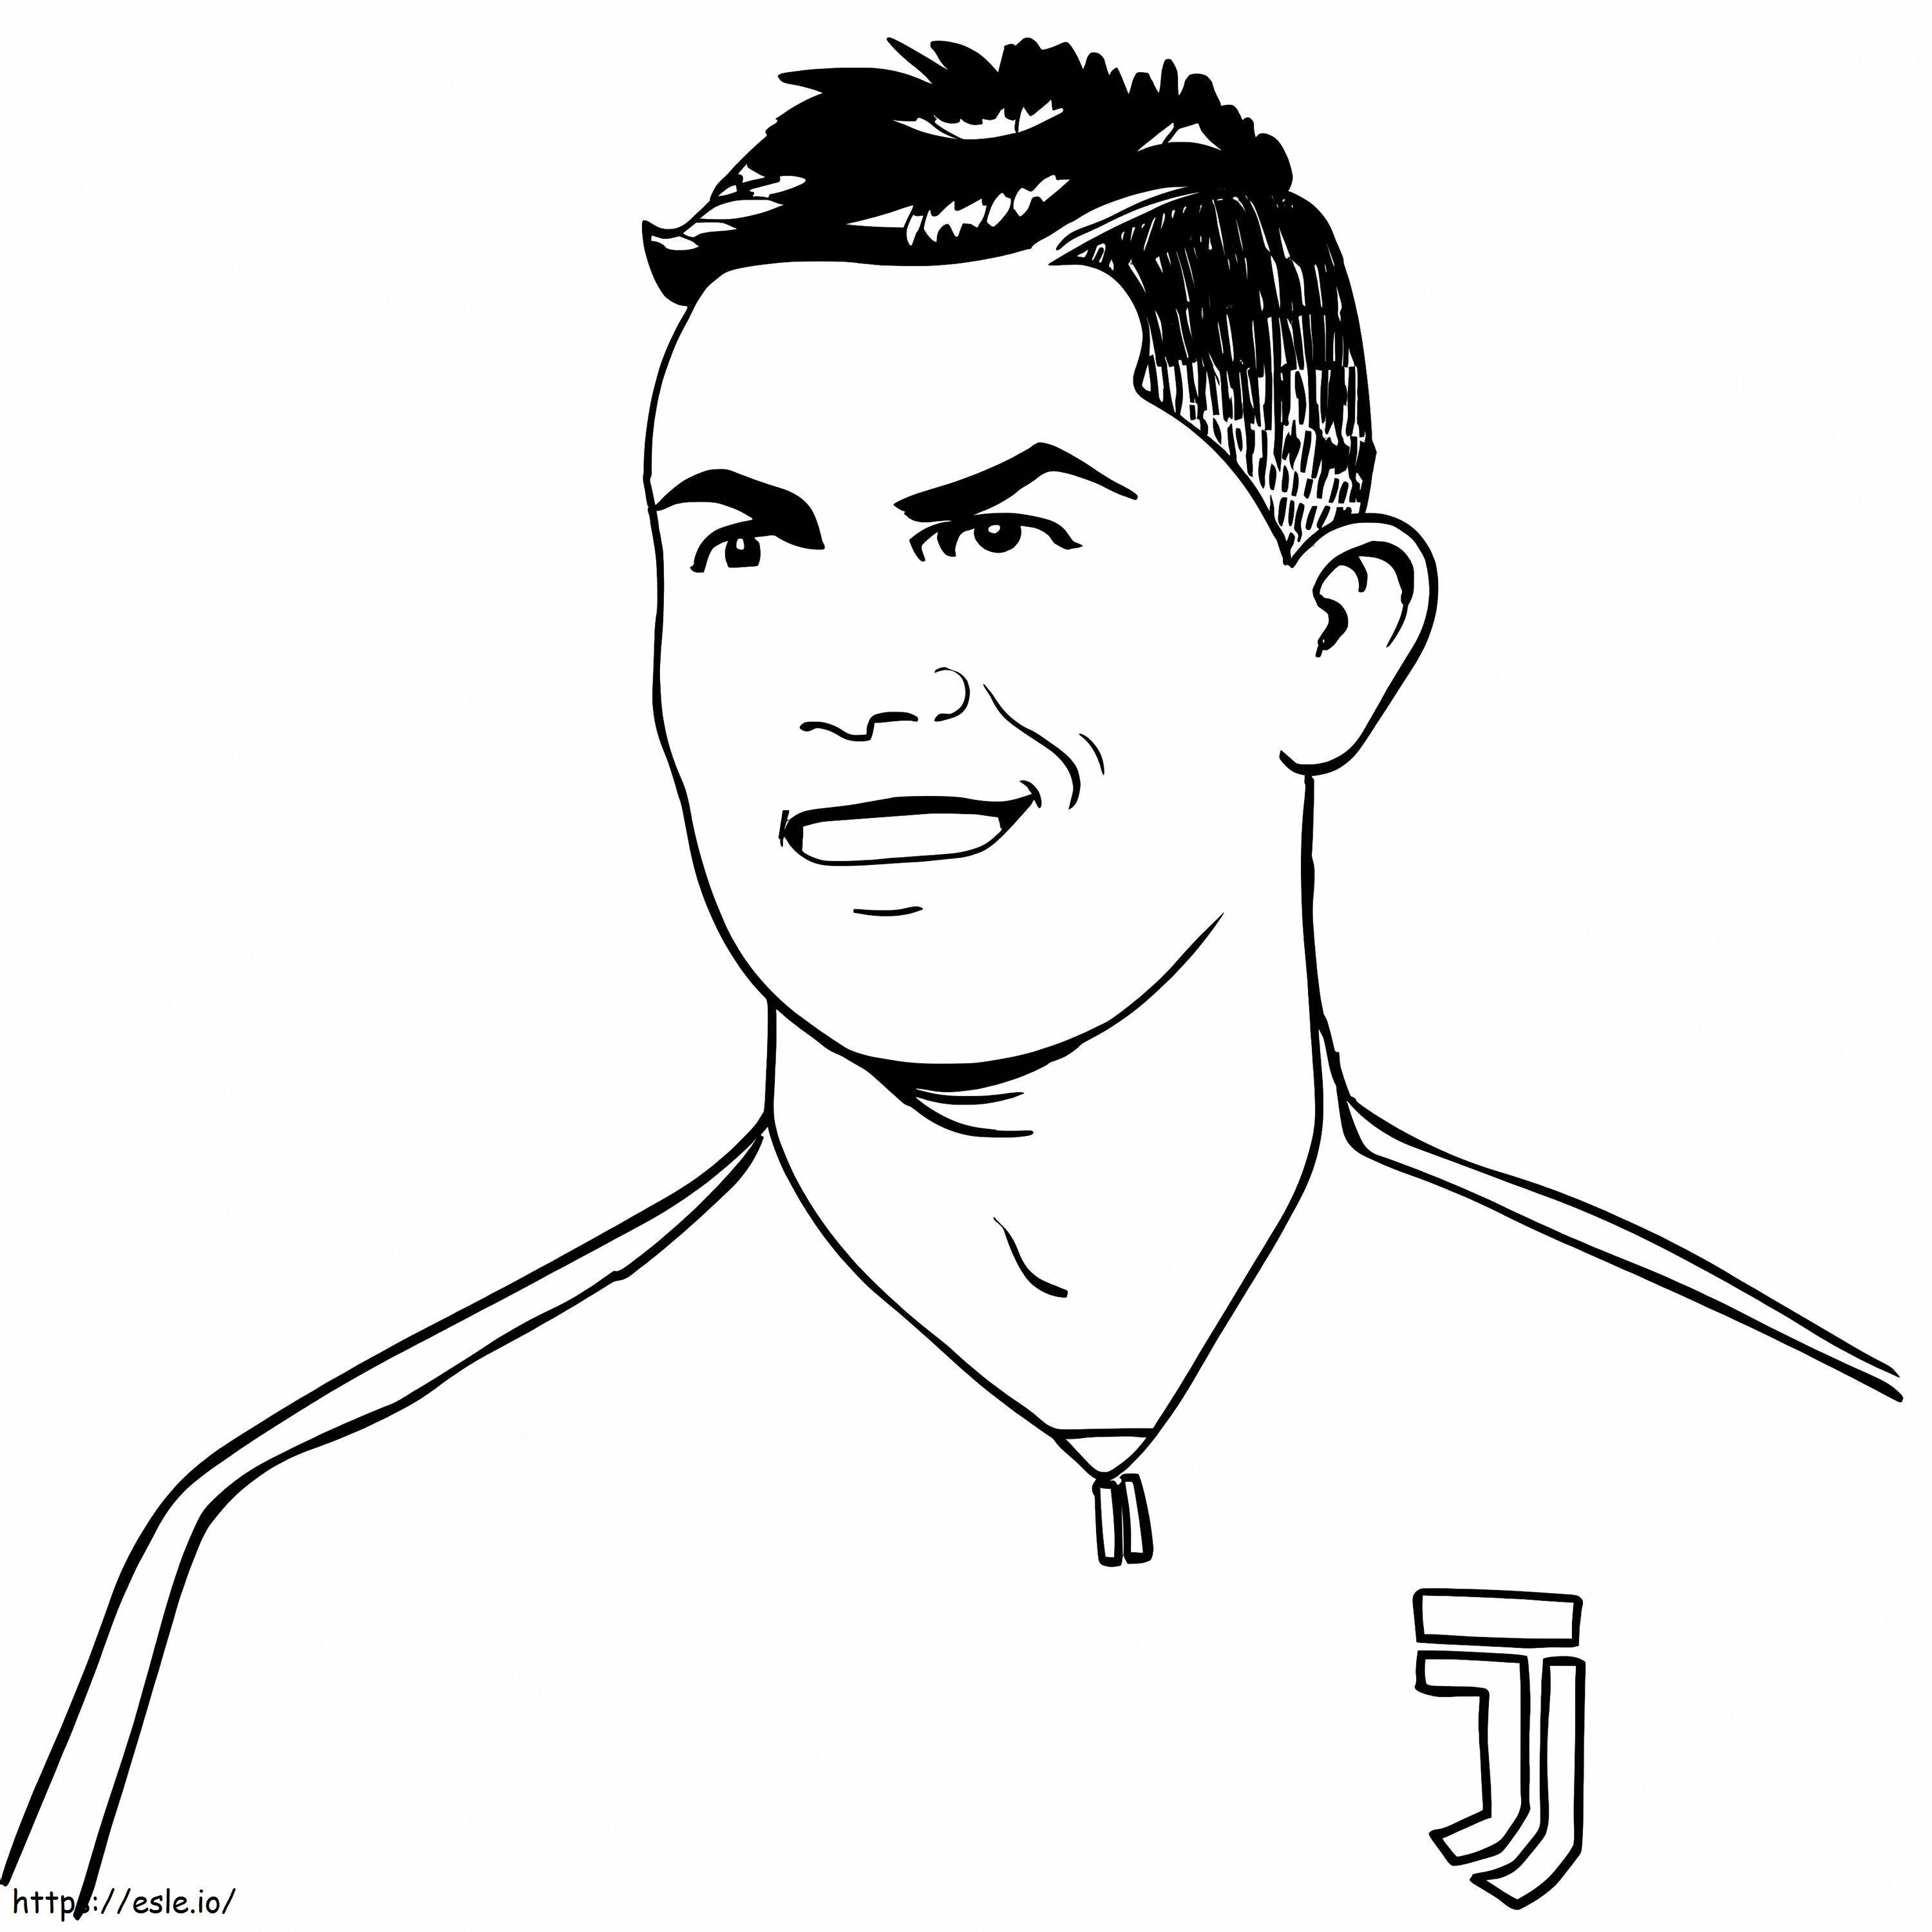 Cristiano Ronaldo Cara Sonriente para colorear